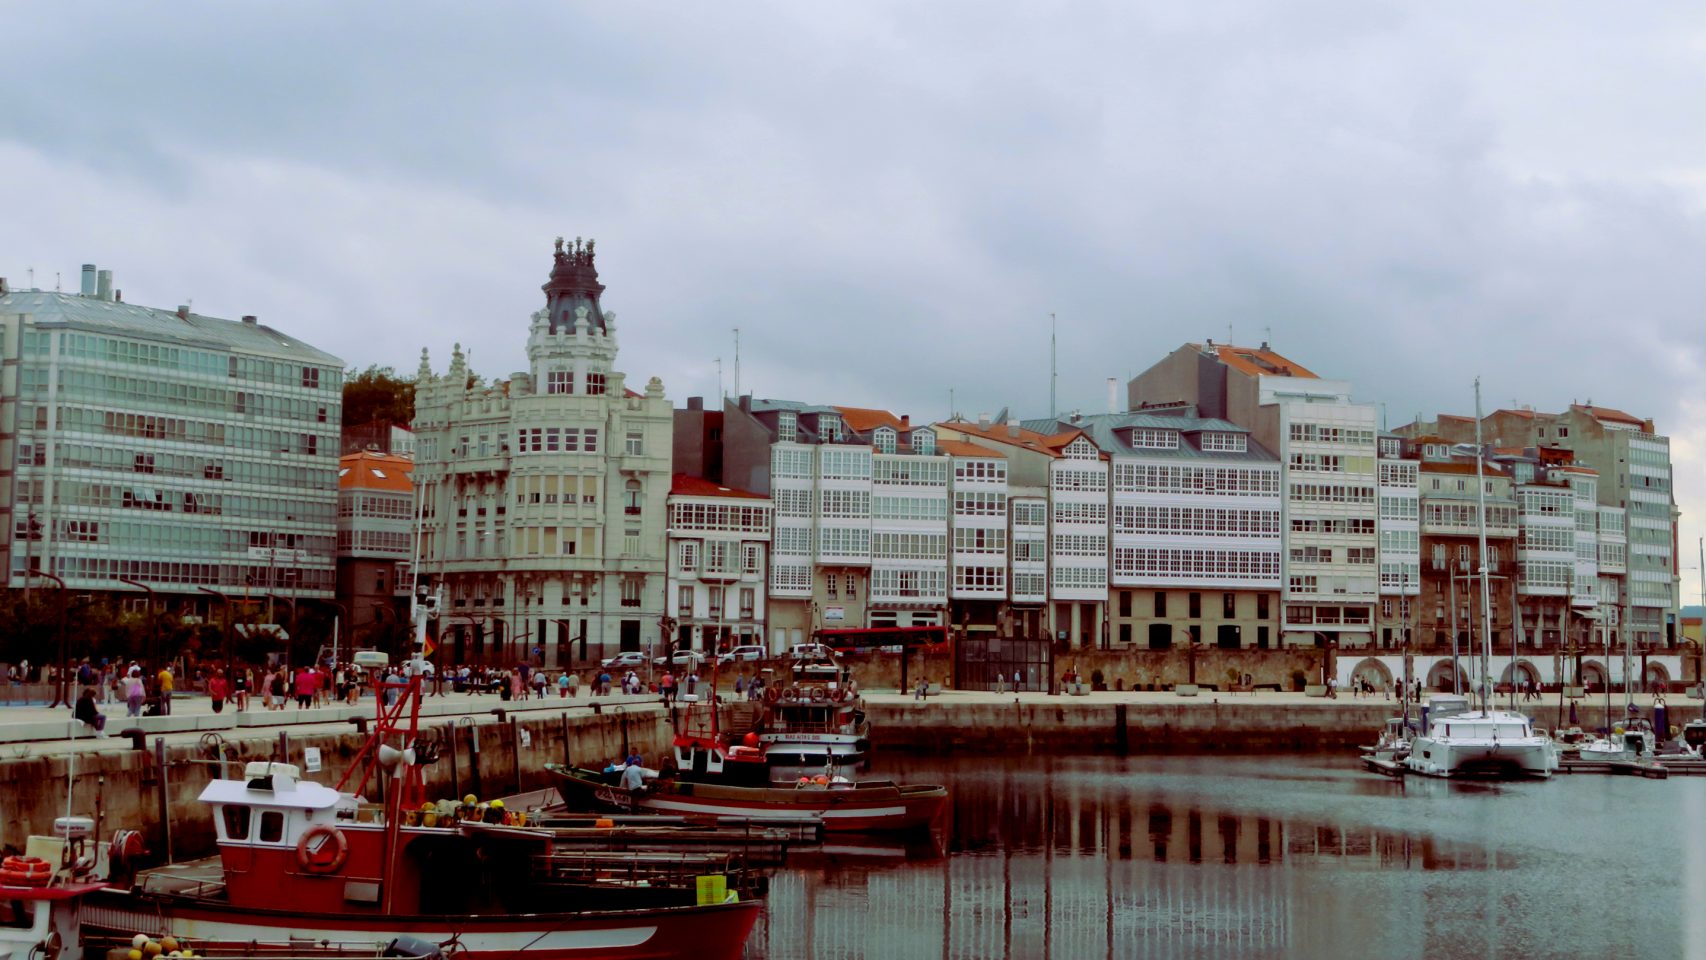 La ciudad de A Coruña en un día nublado.